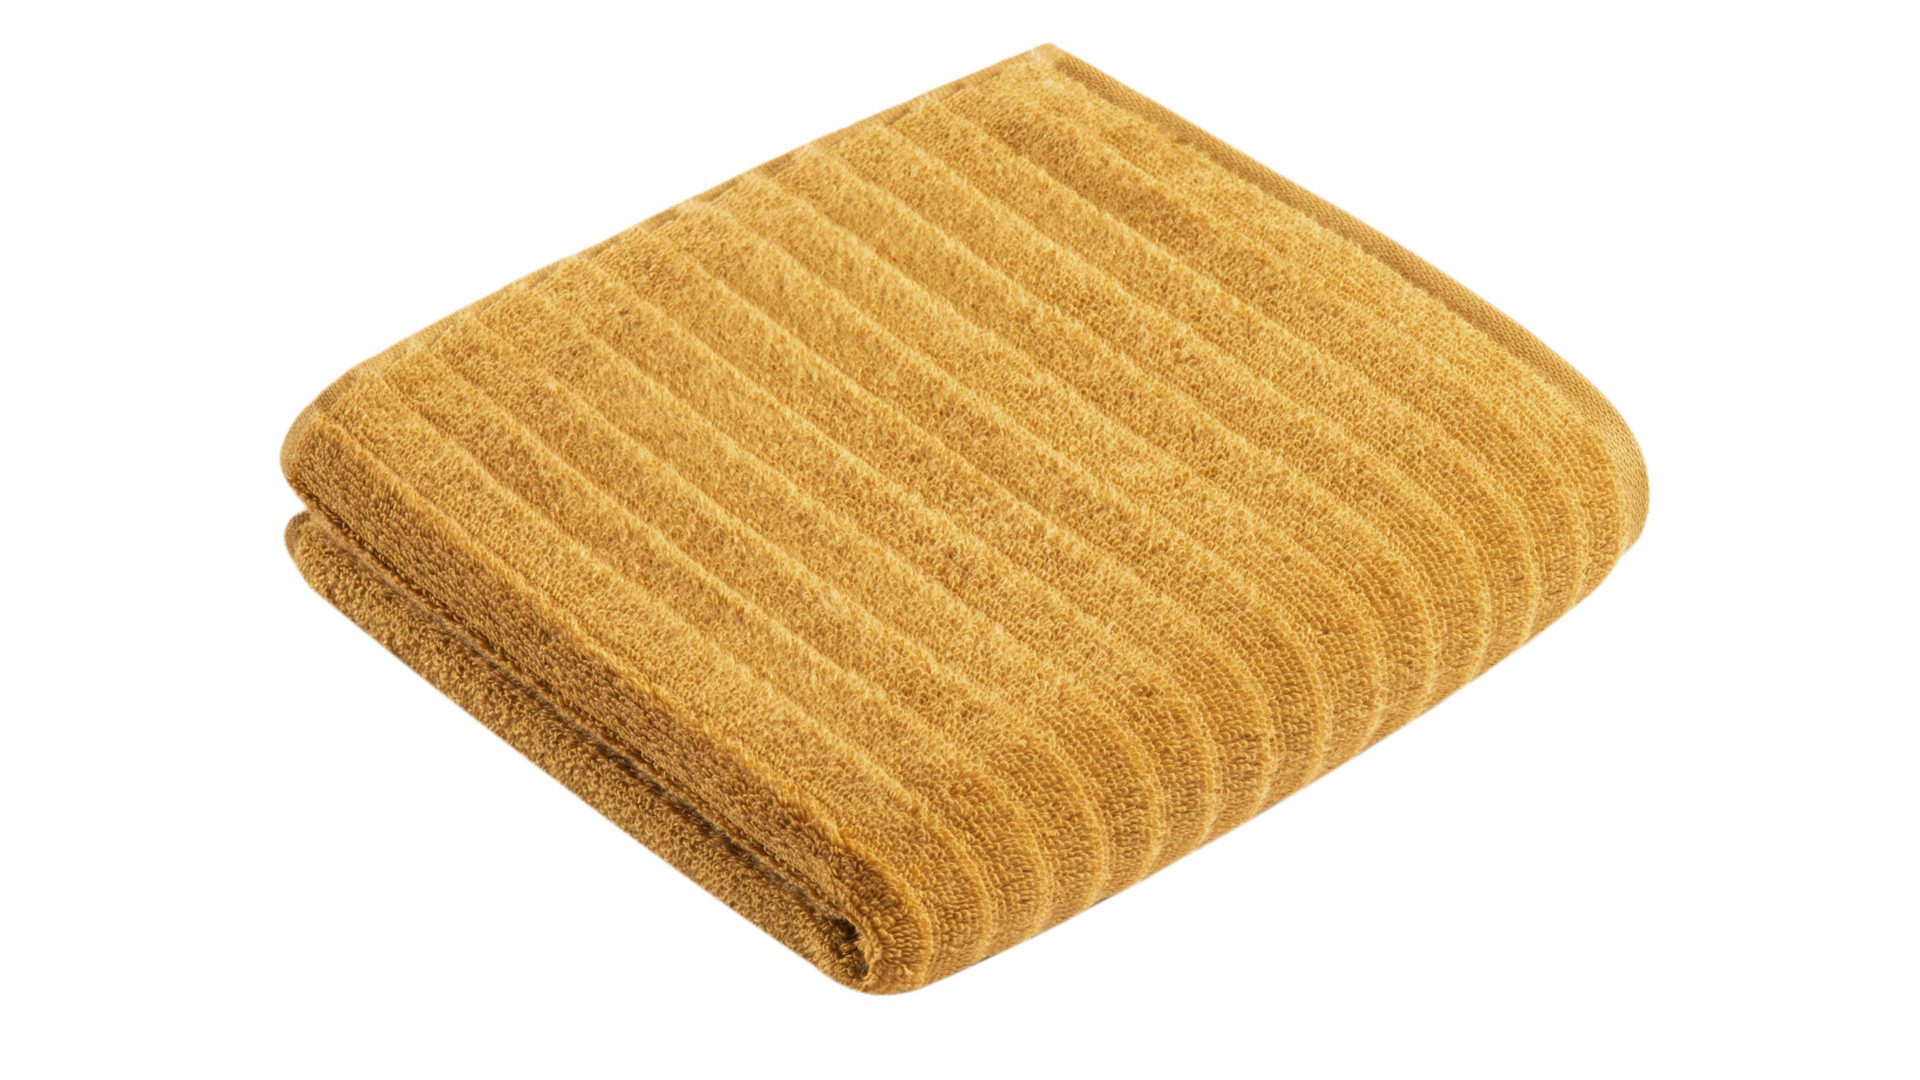 Handtuch Vossen aus Naturfaser in Gelb VOSSEN® Frottee-Serie Mystic - Handtuch gingkofarbene Baumwolle - ca. 50 x 100 cm